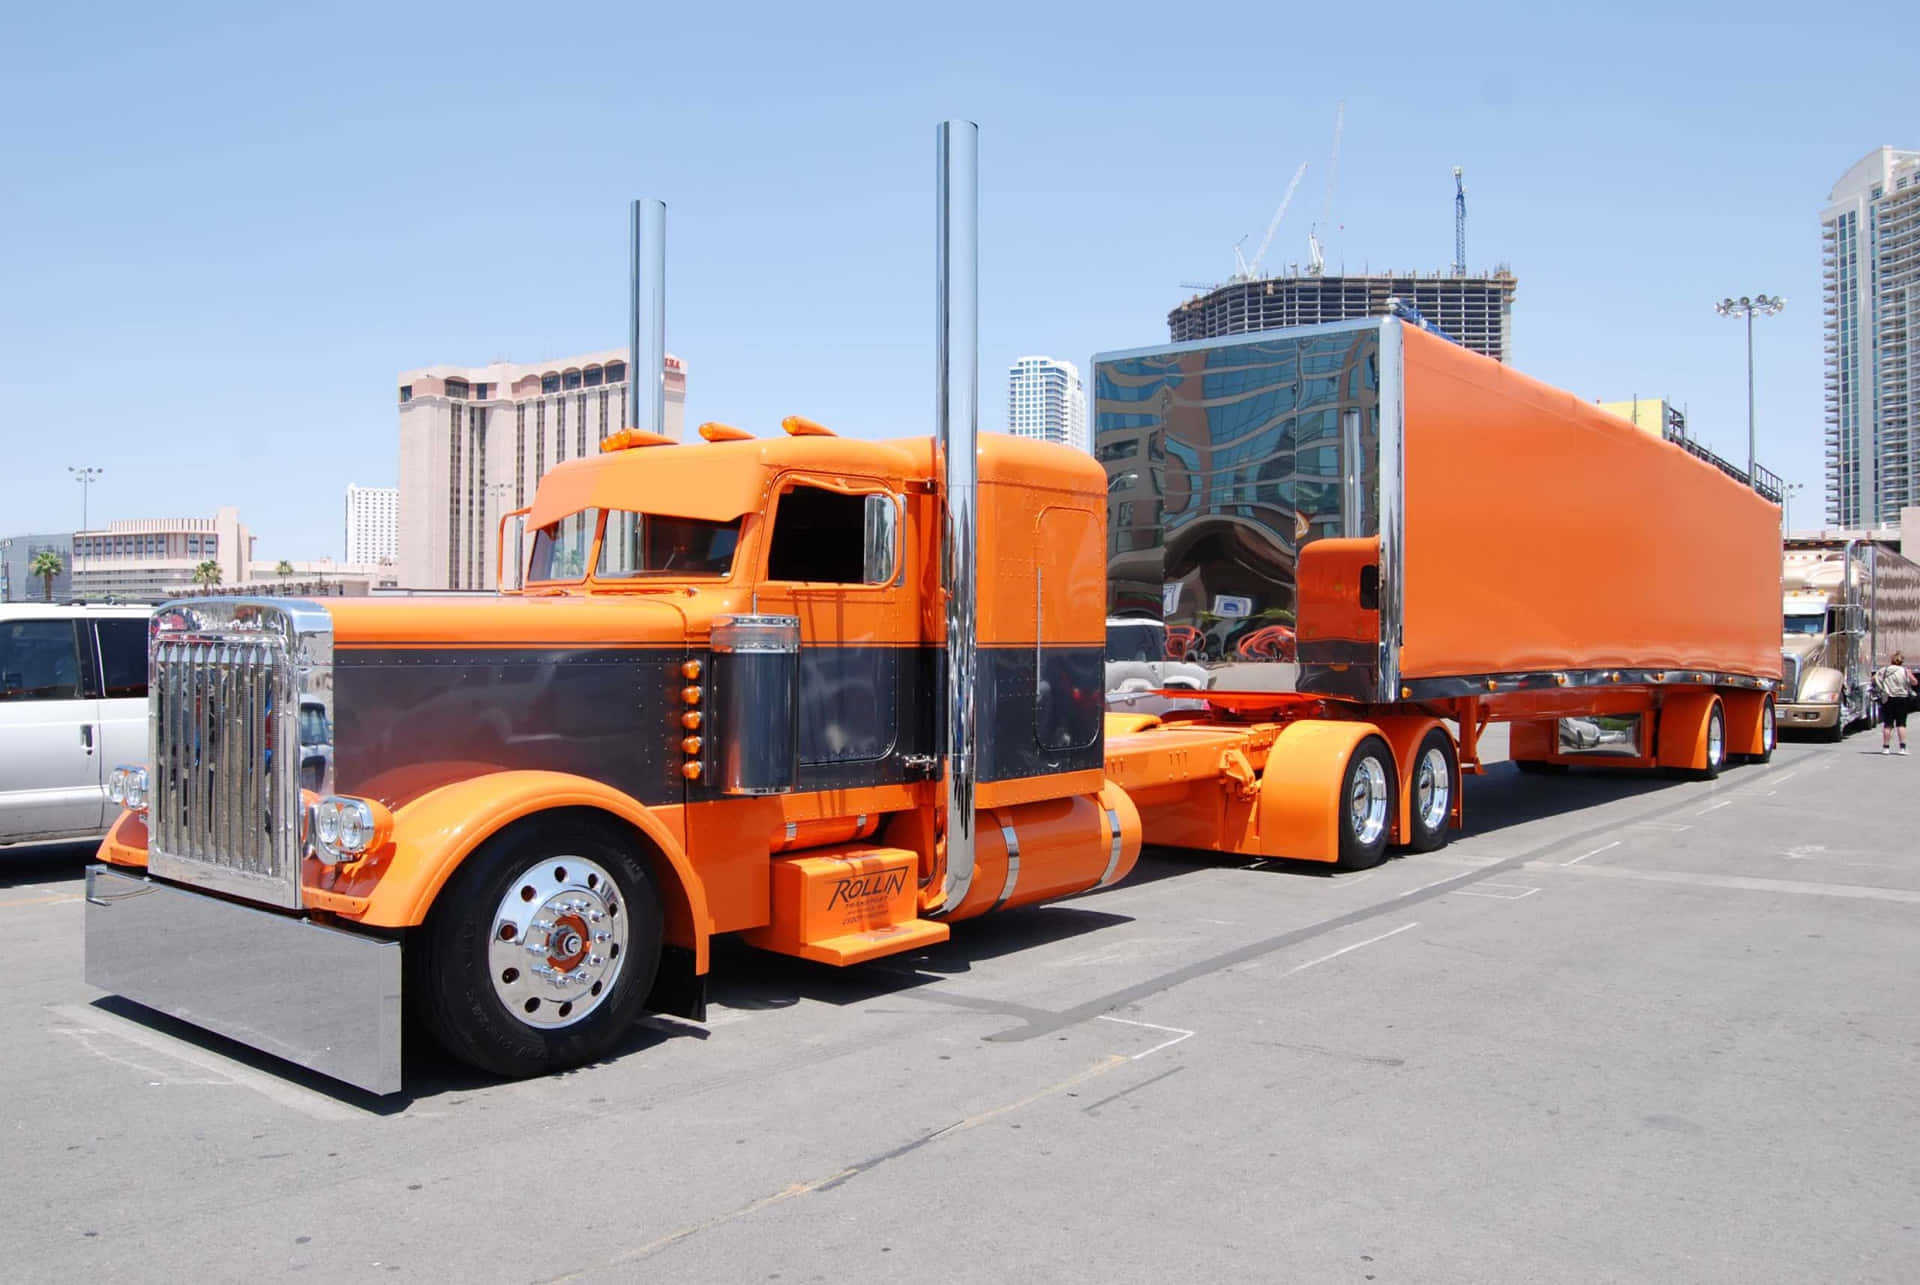 Ungrande Camion Arancione